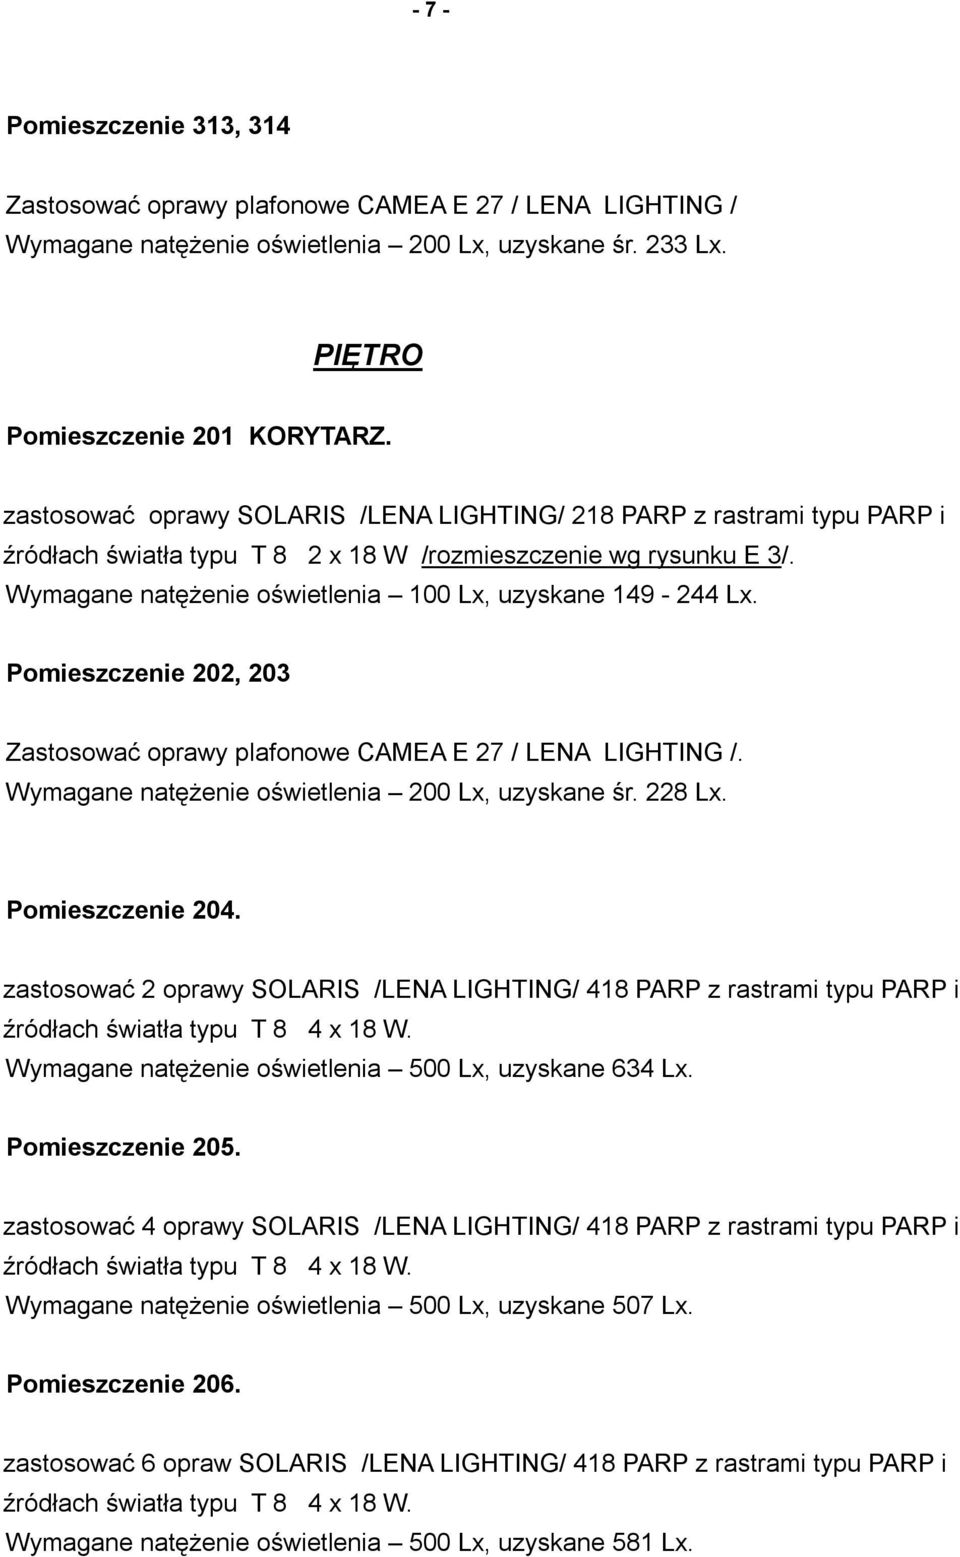 Wymagane natężenie oświetlenia 100 Lx, uzyskane 149-244 Lx. Pomieszczenie 202, 203 Zastosować oprawy plafonowe CAMEA E 27 / LENA LIGHTING /. Wymagane natężenie oświetlenia 200 Lx, uzyskane śr. 228 Lx.